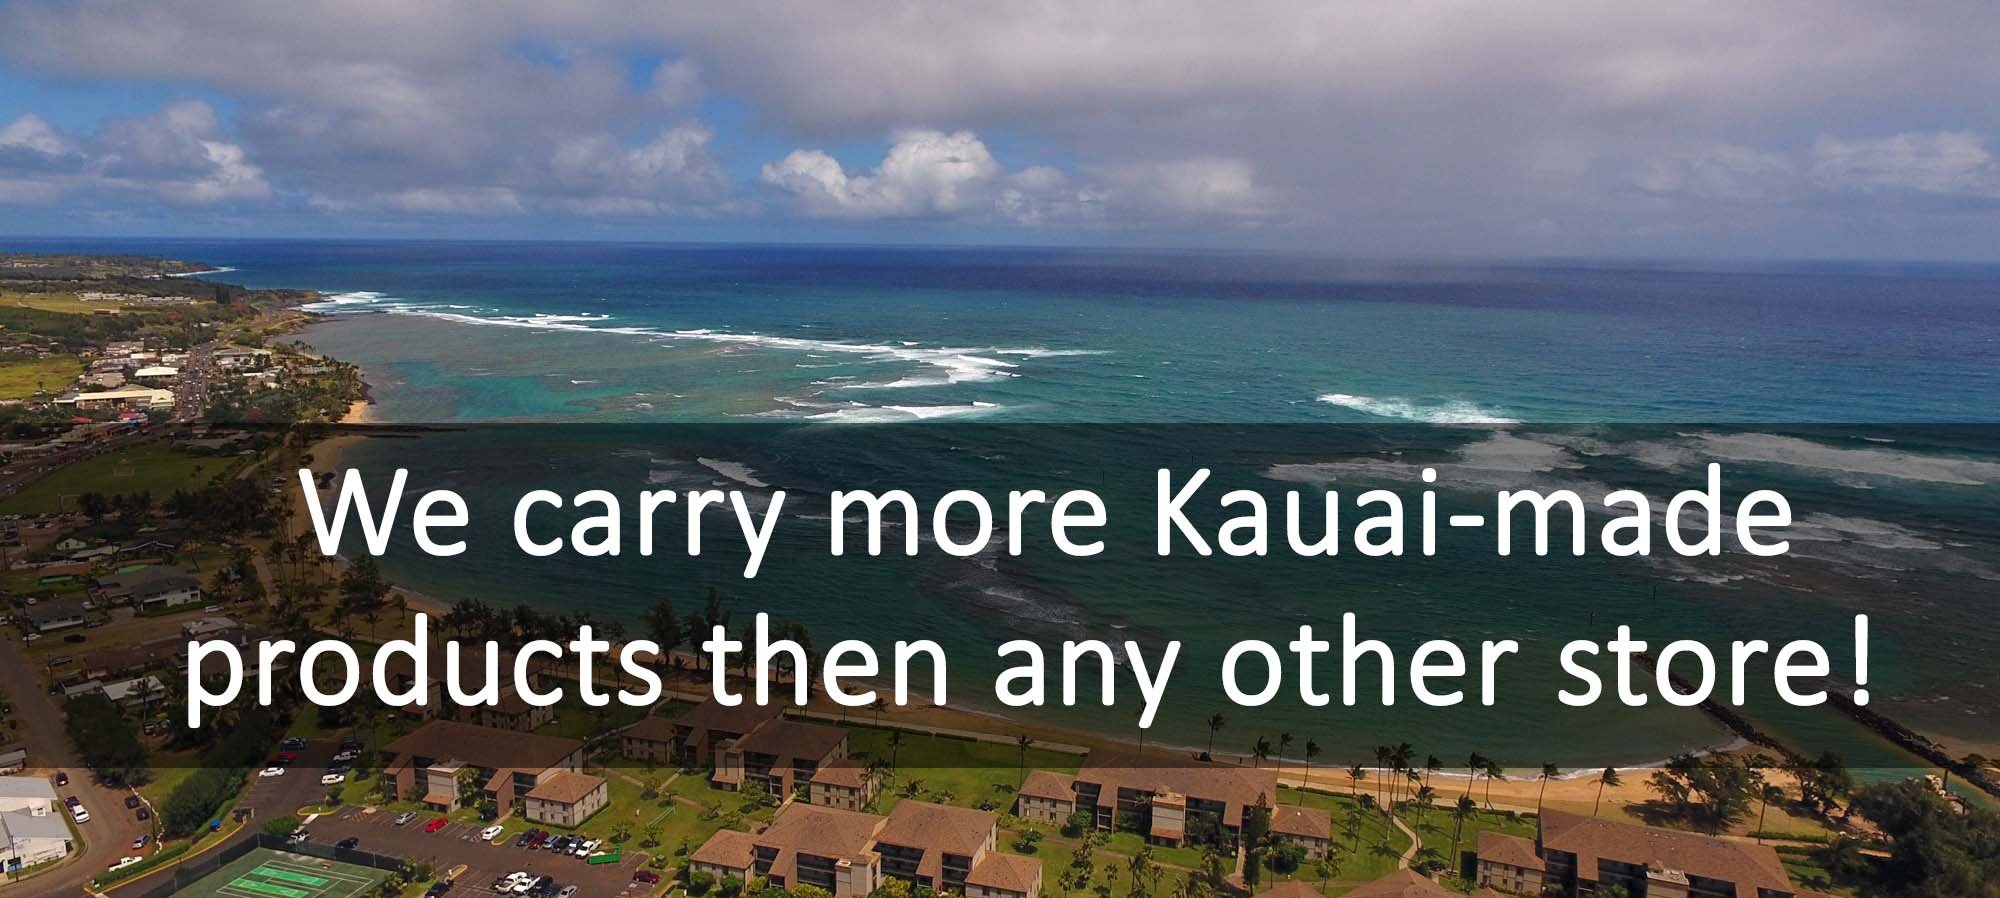 Kauai store aloha